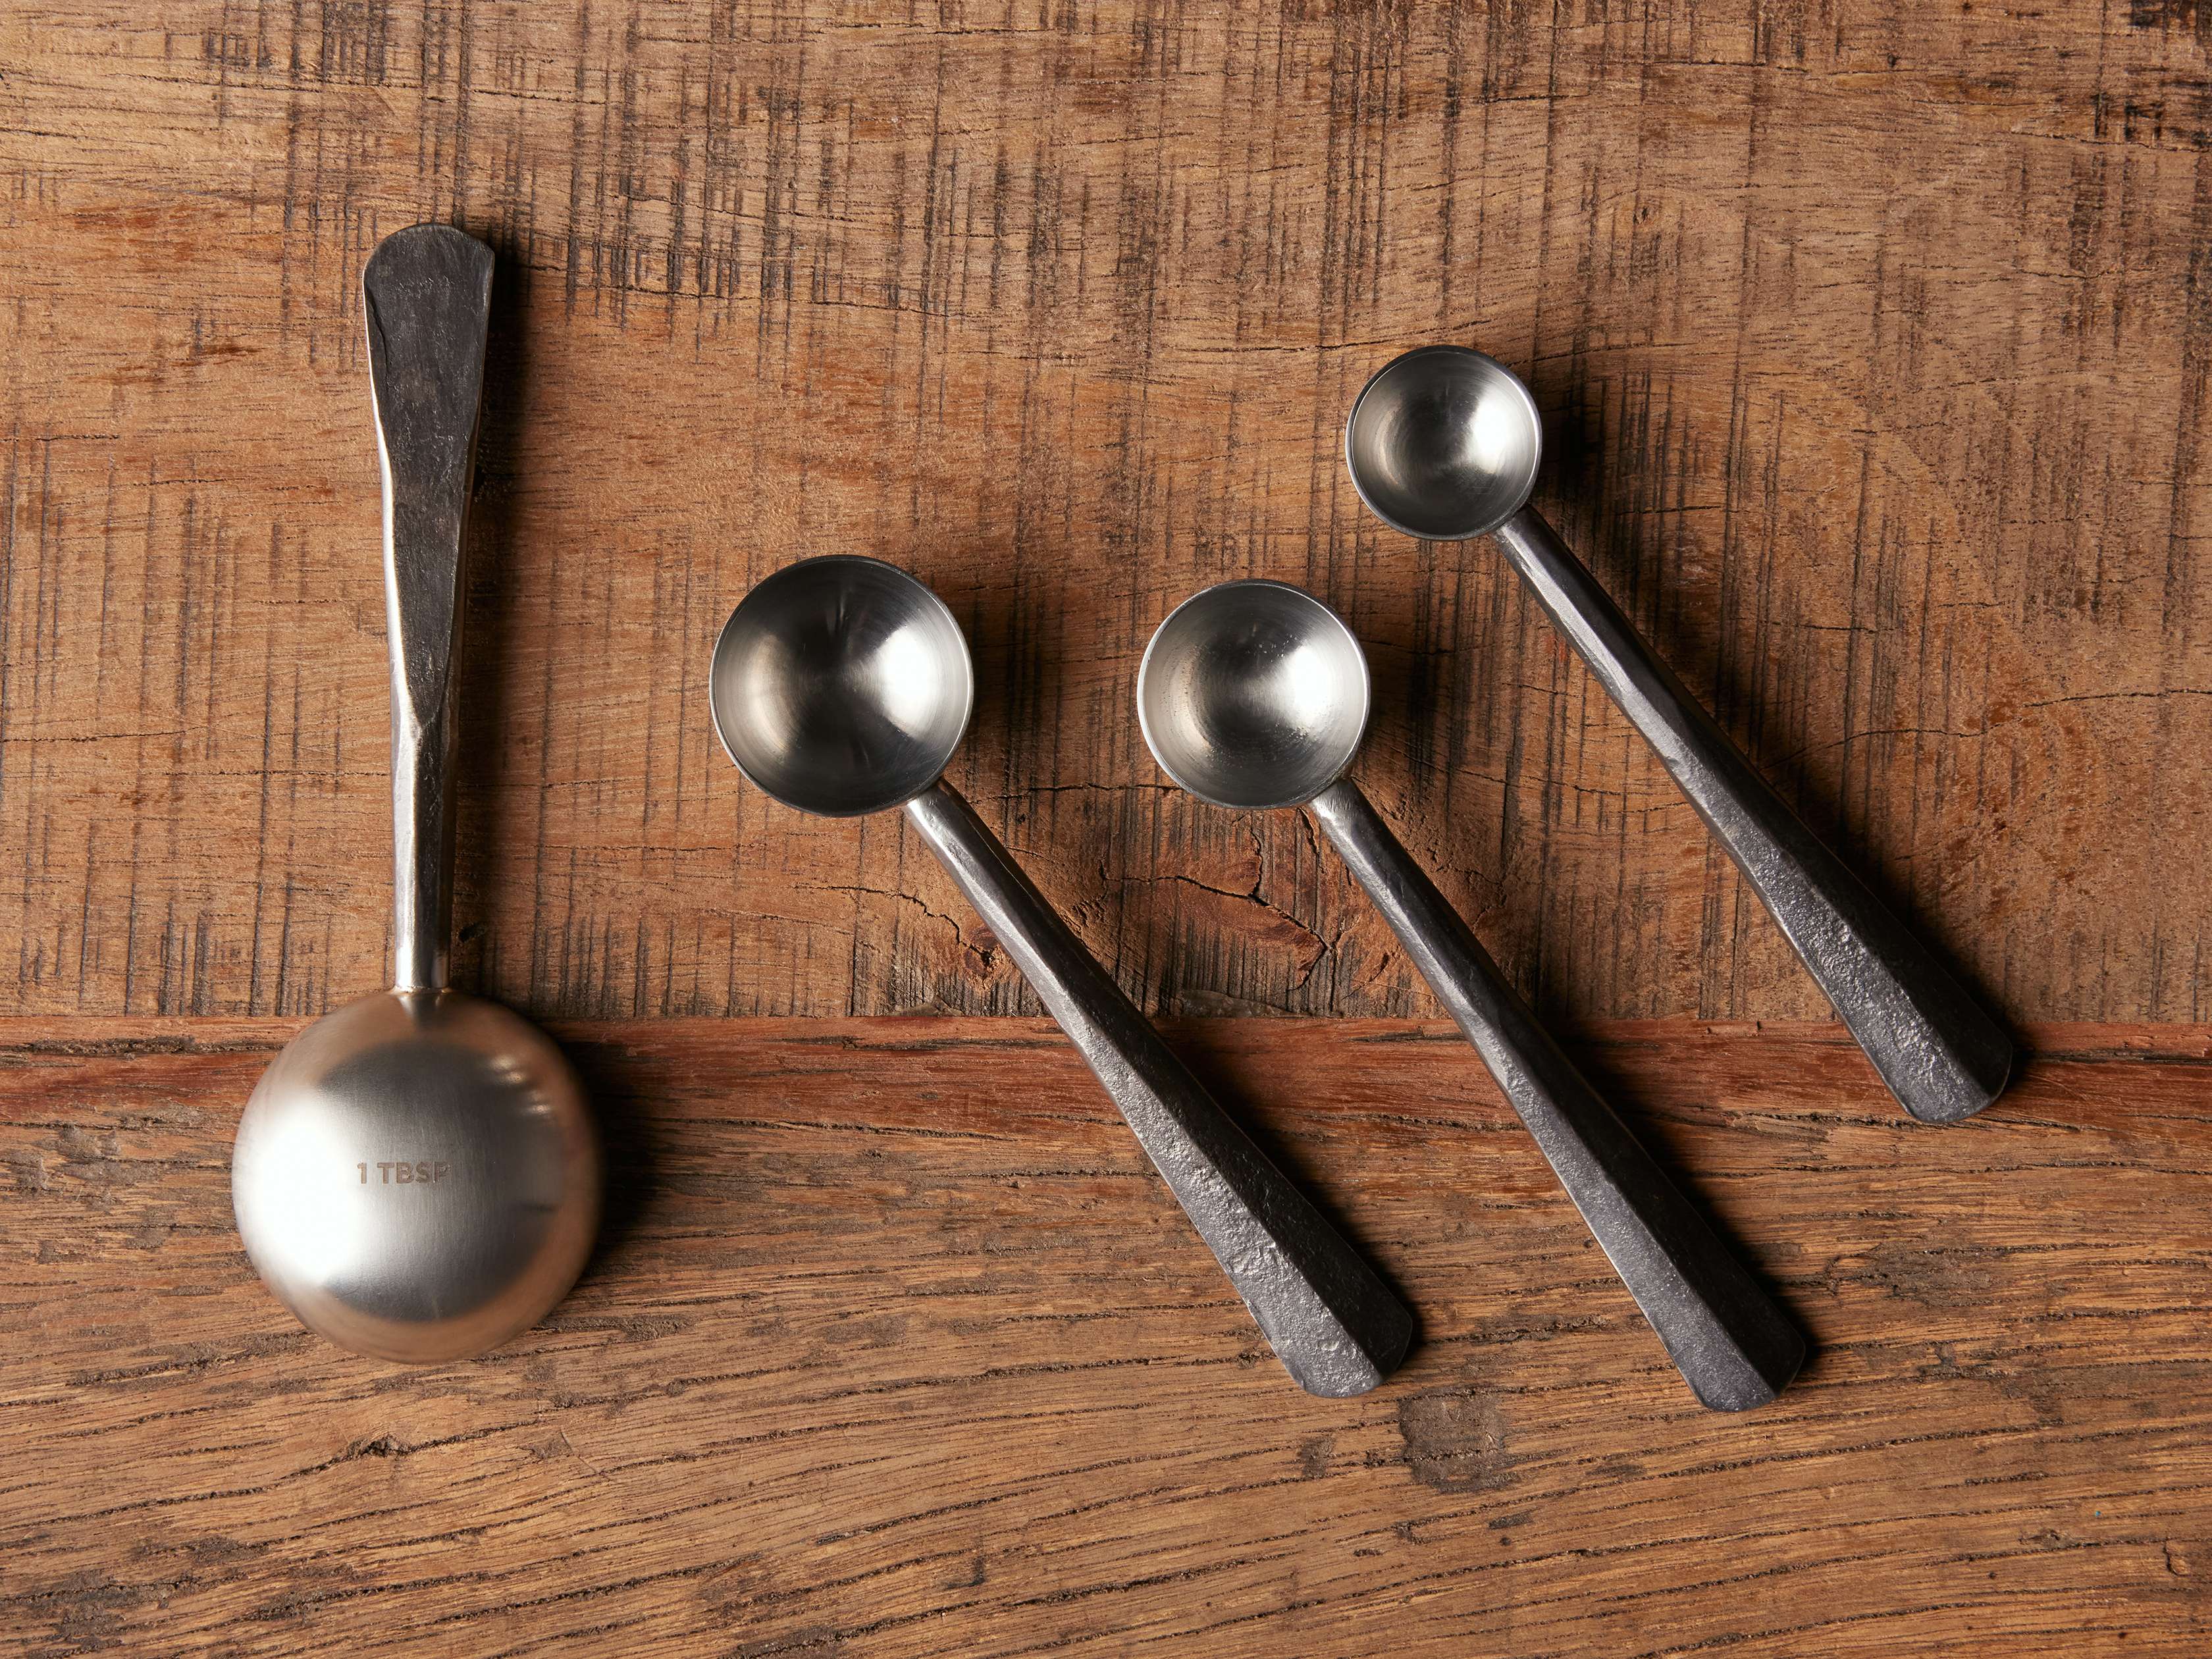 Arhaus Arber Measuring Spoons in Copper (Set of 4)